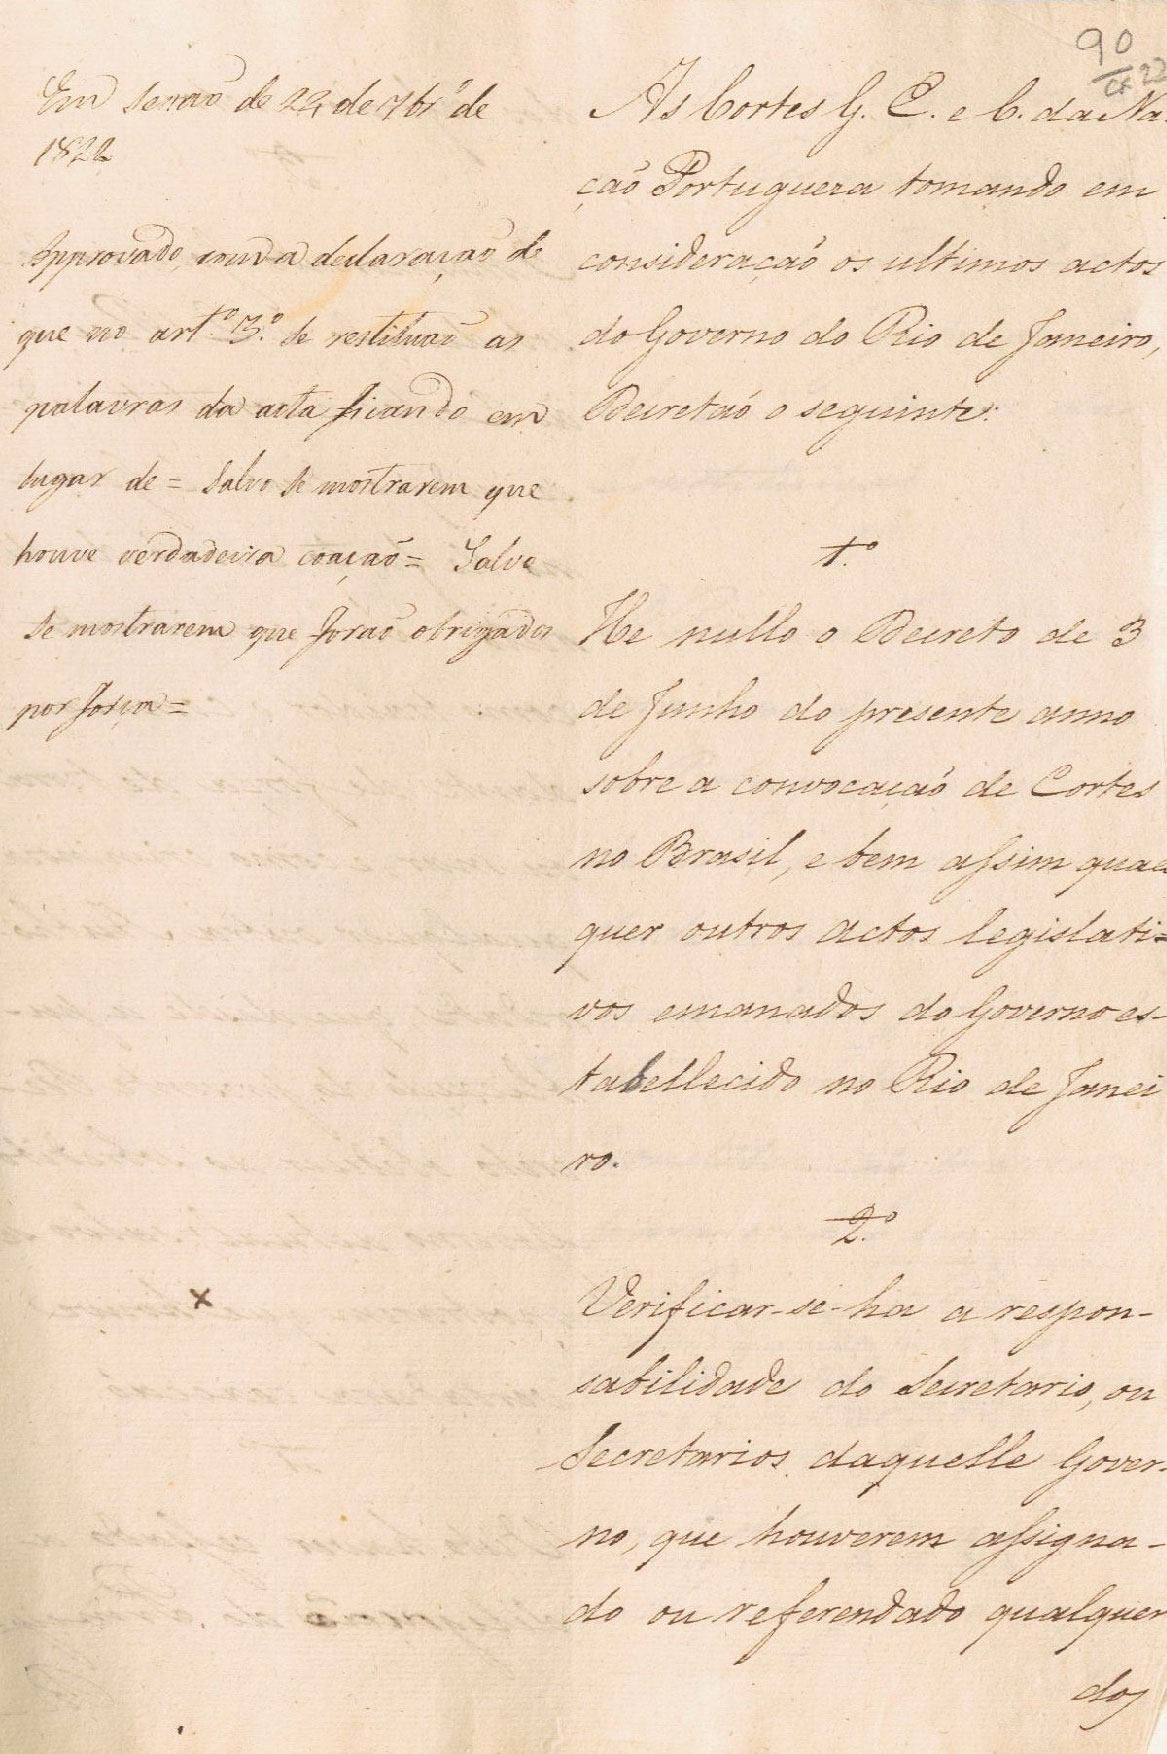 Projeto de Decreto n.º 301 que anulava os atos legislativos do Governo do Rio de Janeiro. 24 de setembro de 1822